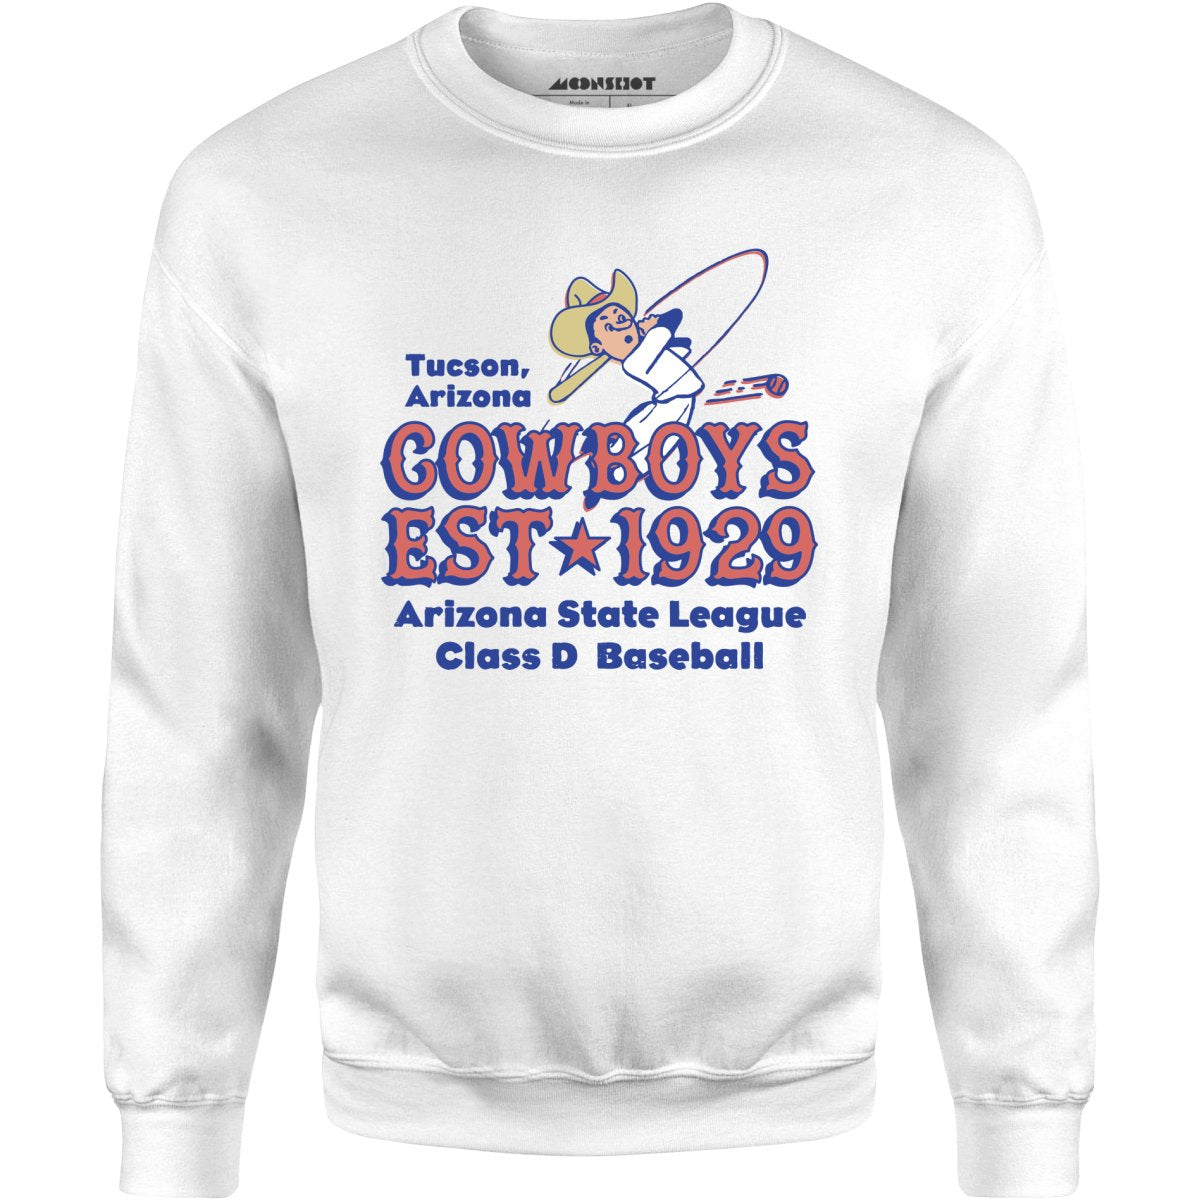 Tucson Cowboys - Arizona - Vintage Defunct Baseball Teams - Unisex Sweatshirt